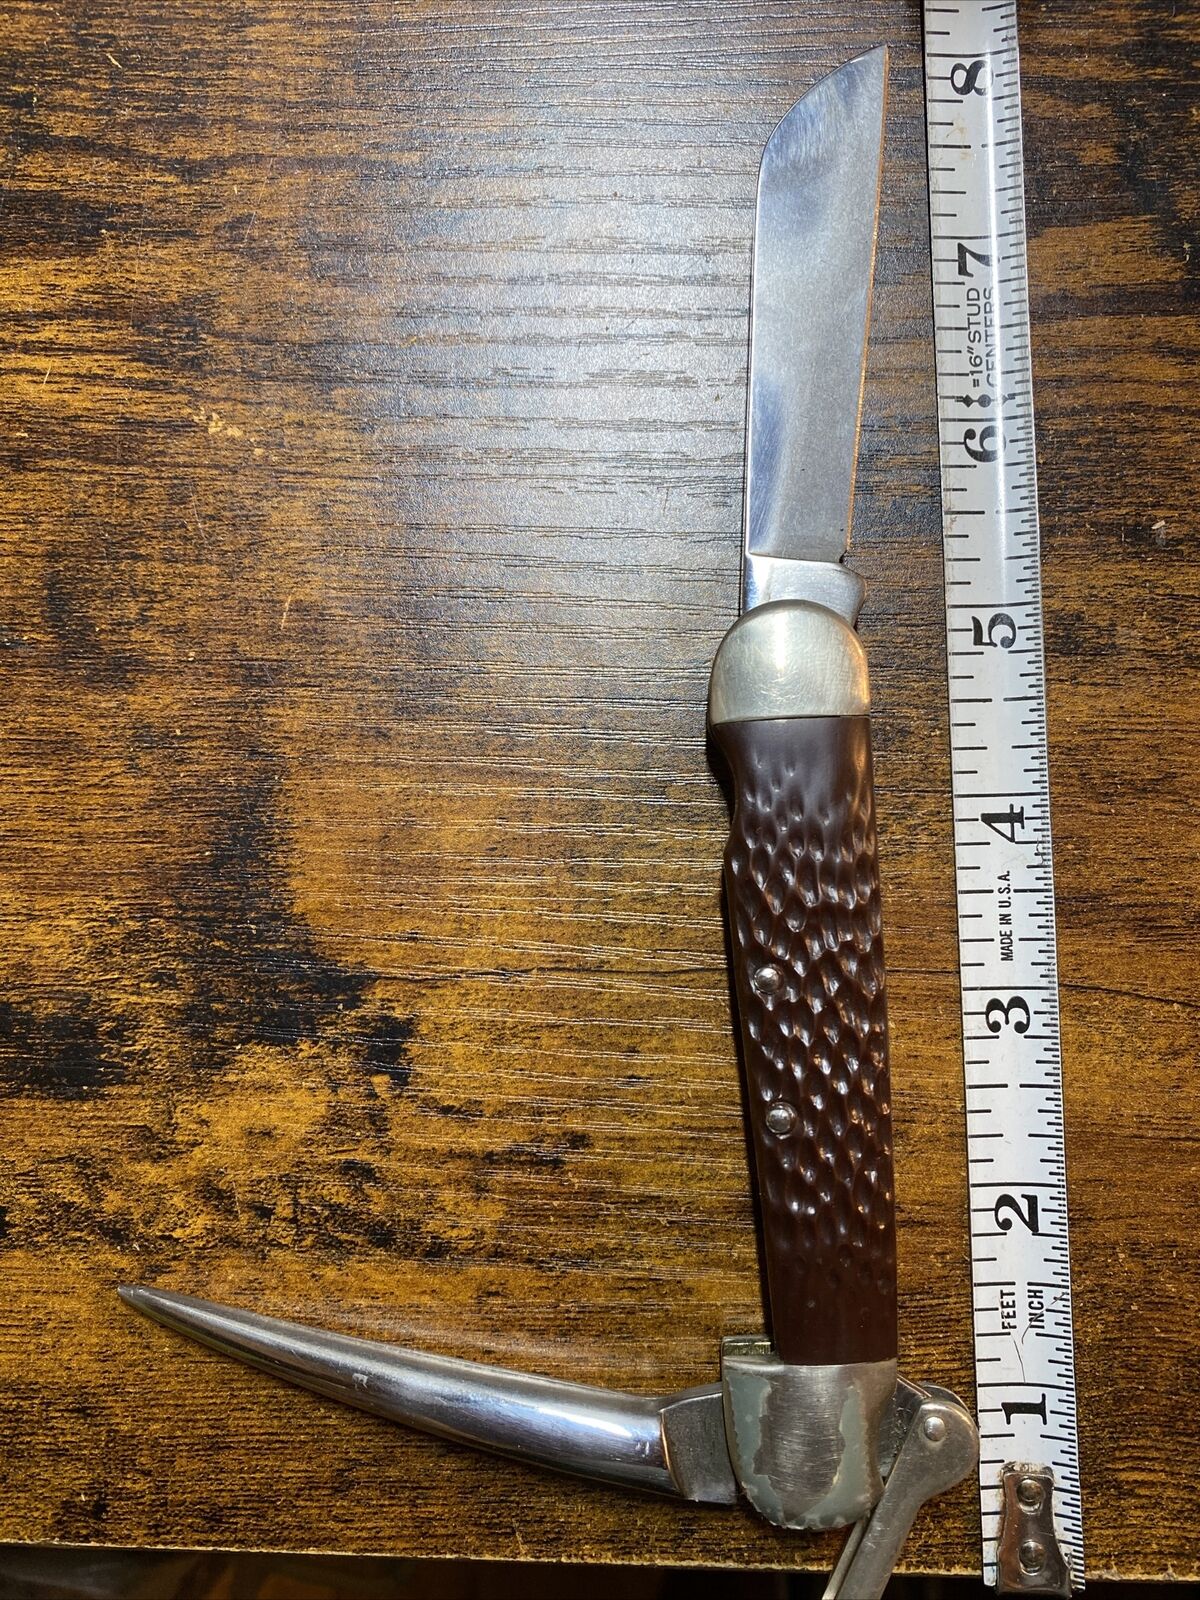 Vintage Camillus Marlin Spike Rigging Sailor Pocket Knife